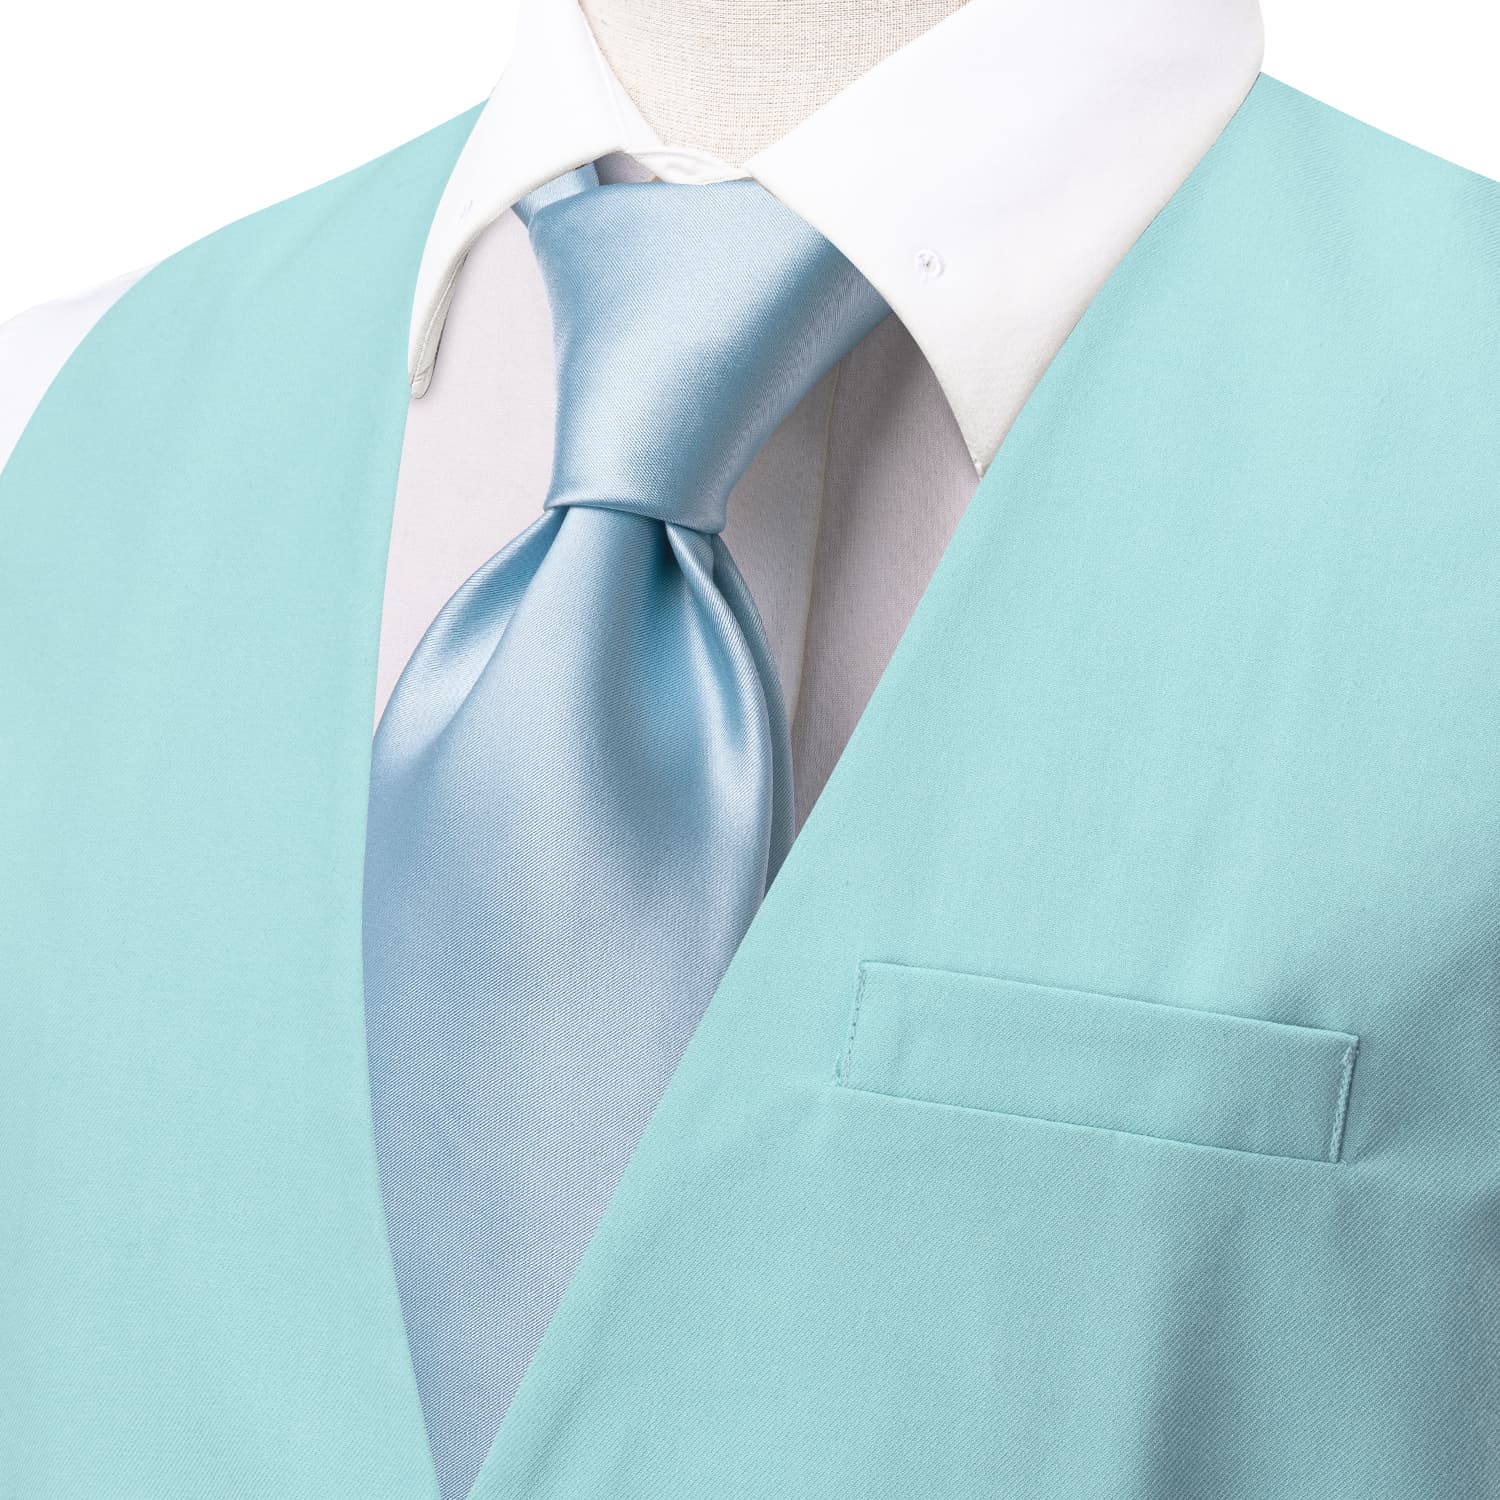 Turquoise Blue Solid V-Neck Waistcoat Formal Mens Vest